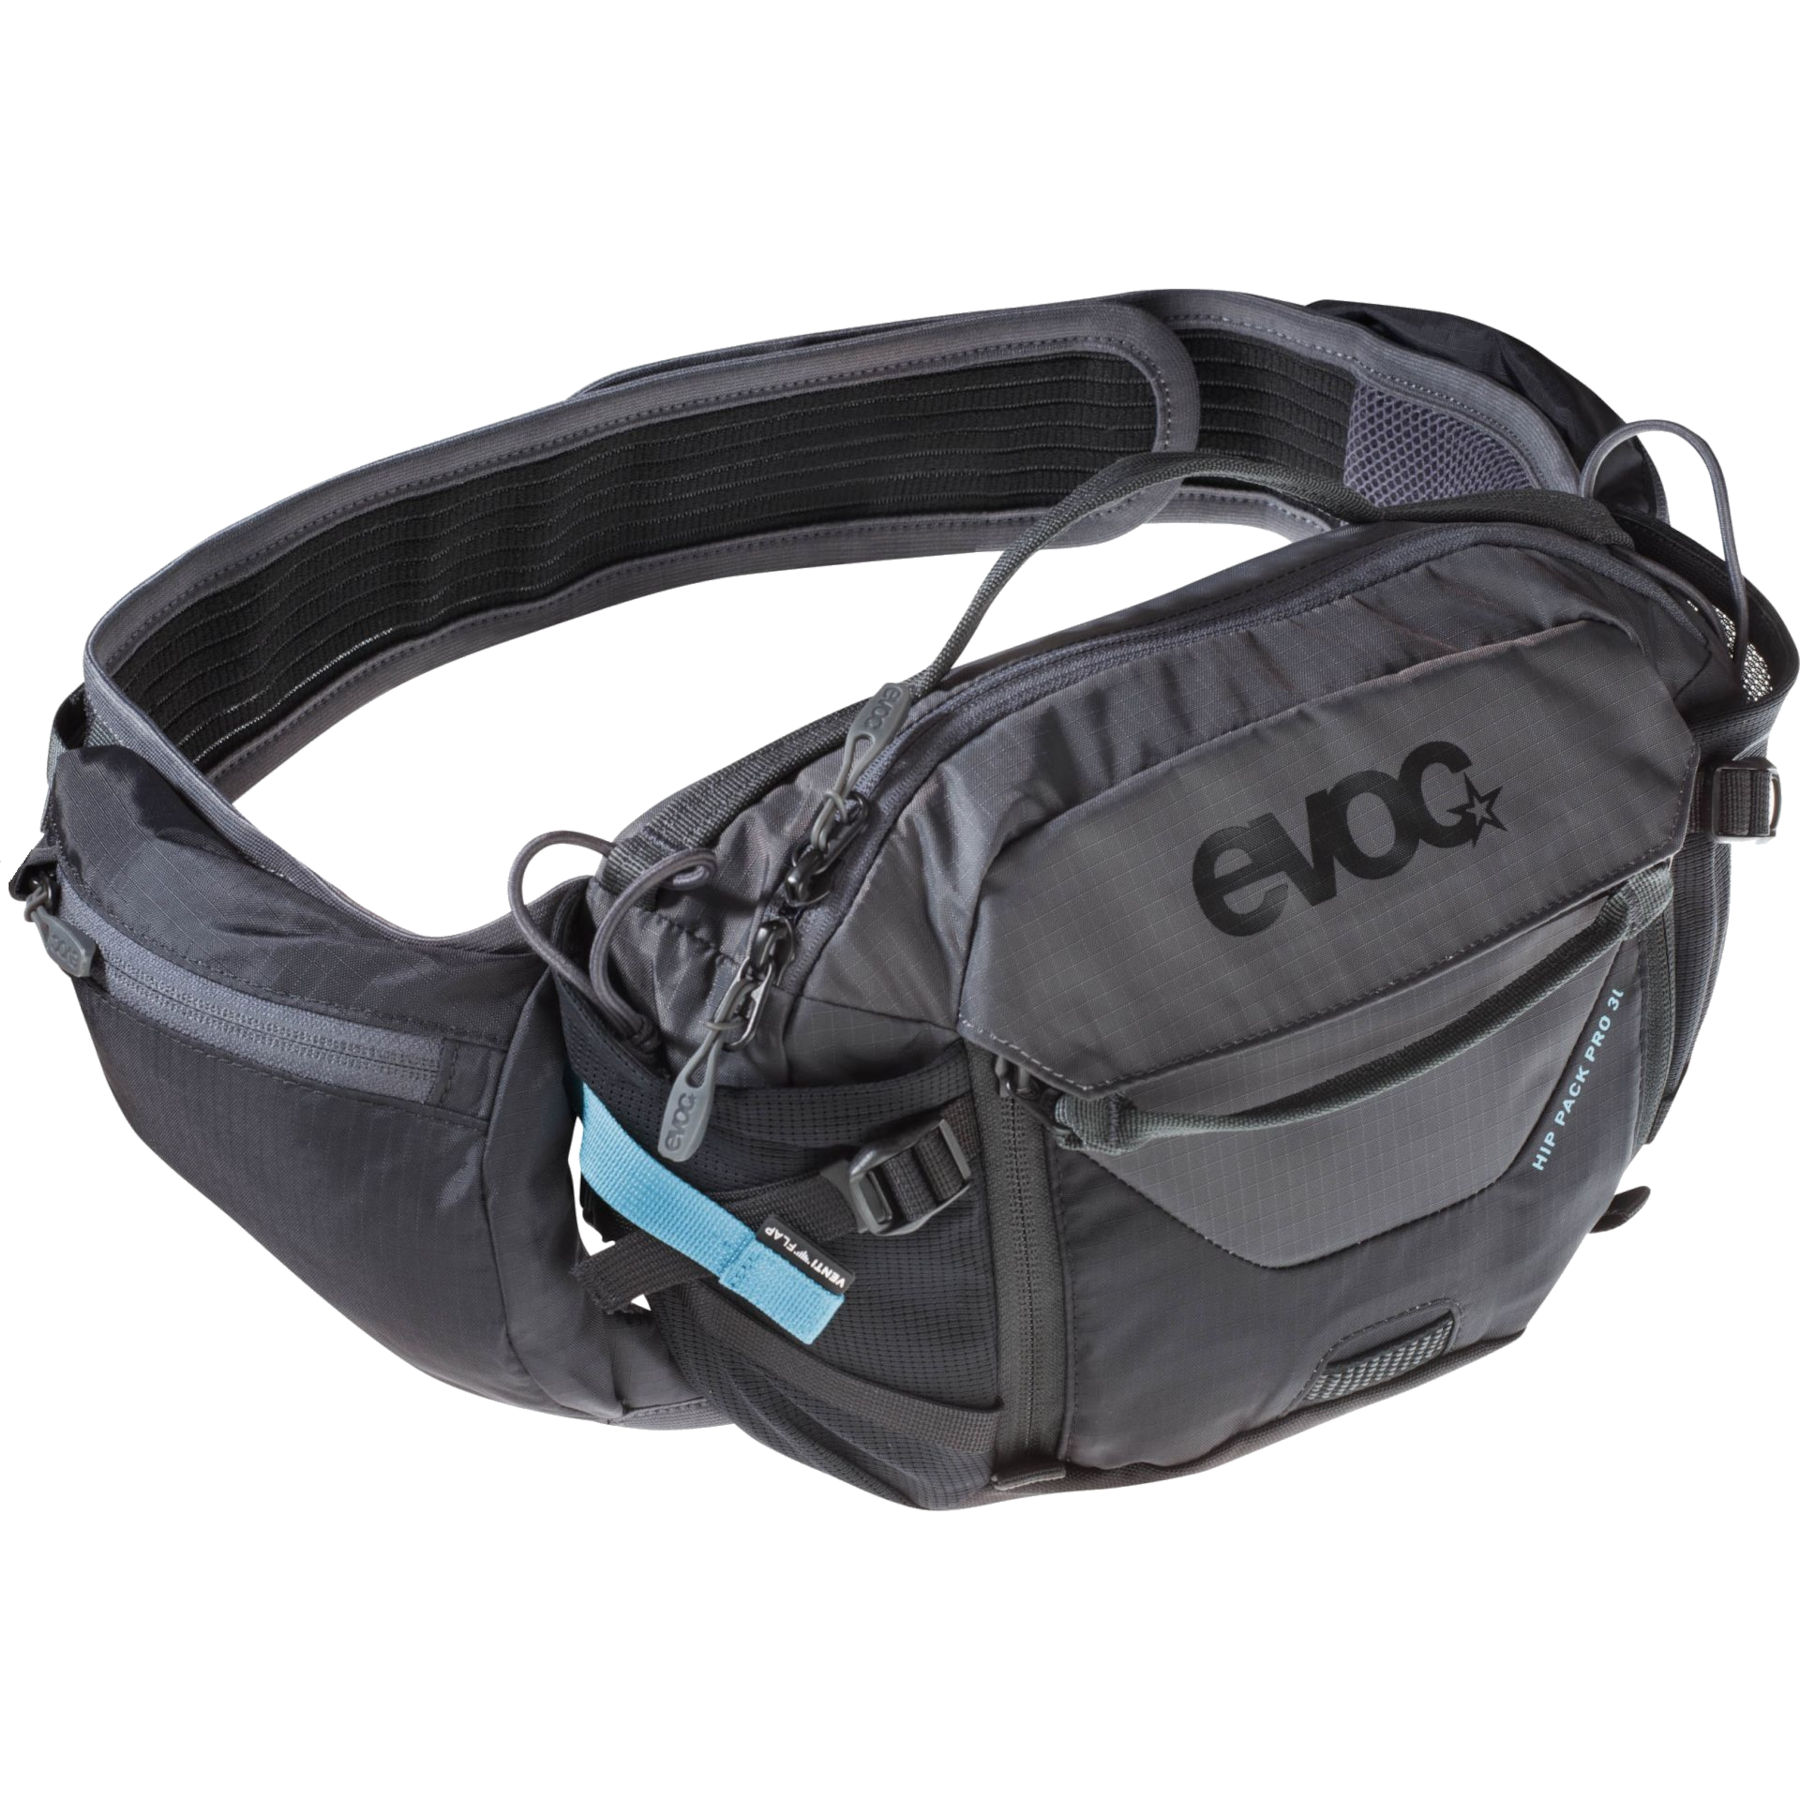 Produktbild von EVOC Hip Pack Pro 3L Hüfttasche - Black/Carbon Grey